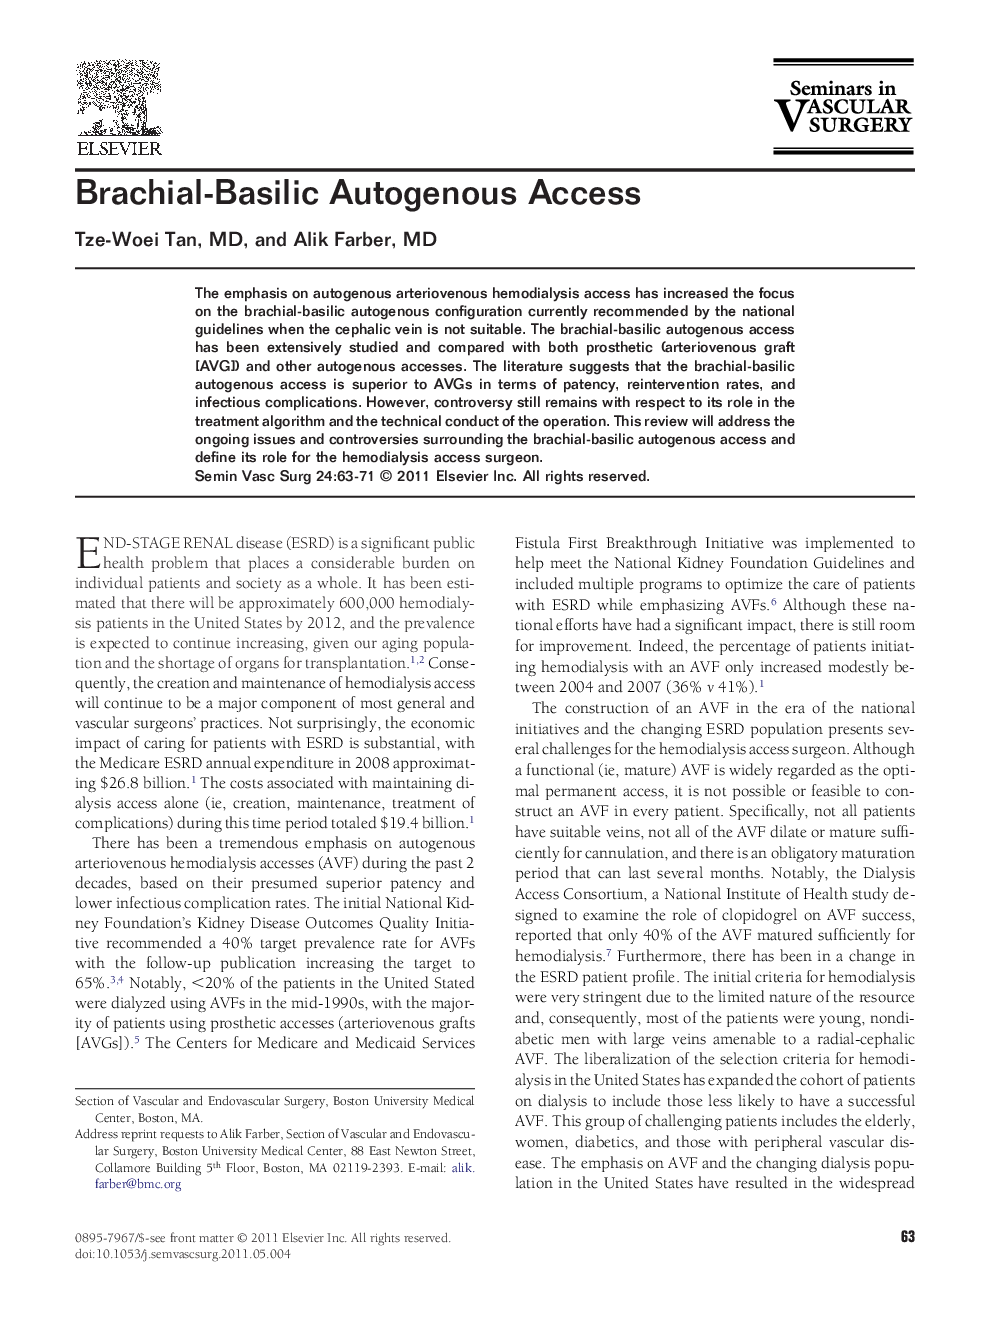 Brachial-Basilic Autogenous Access